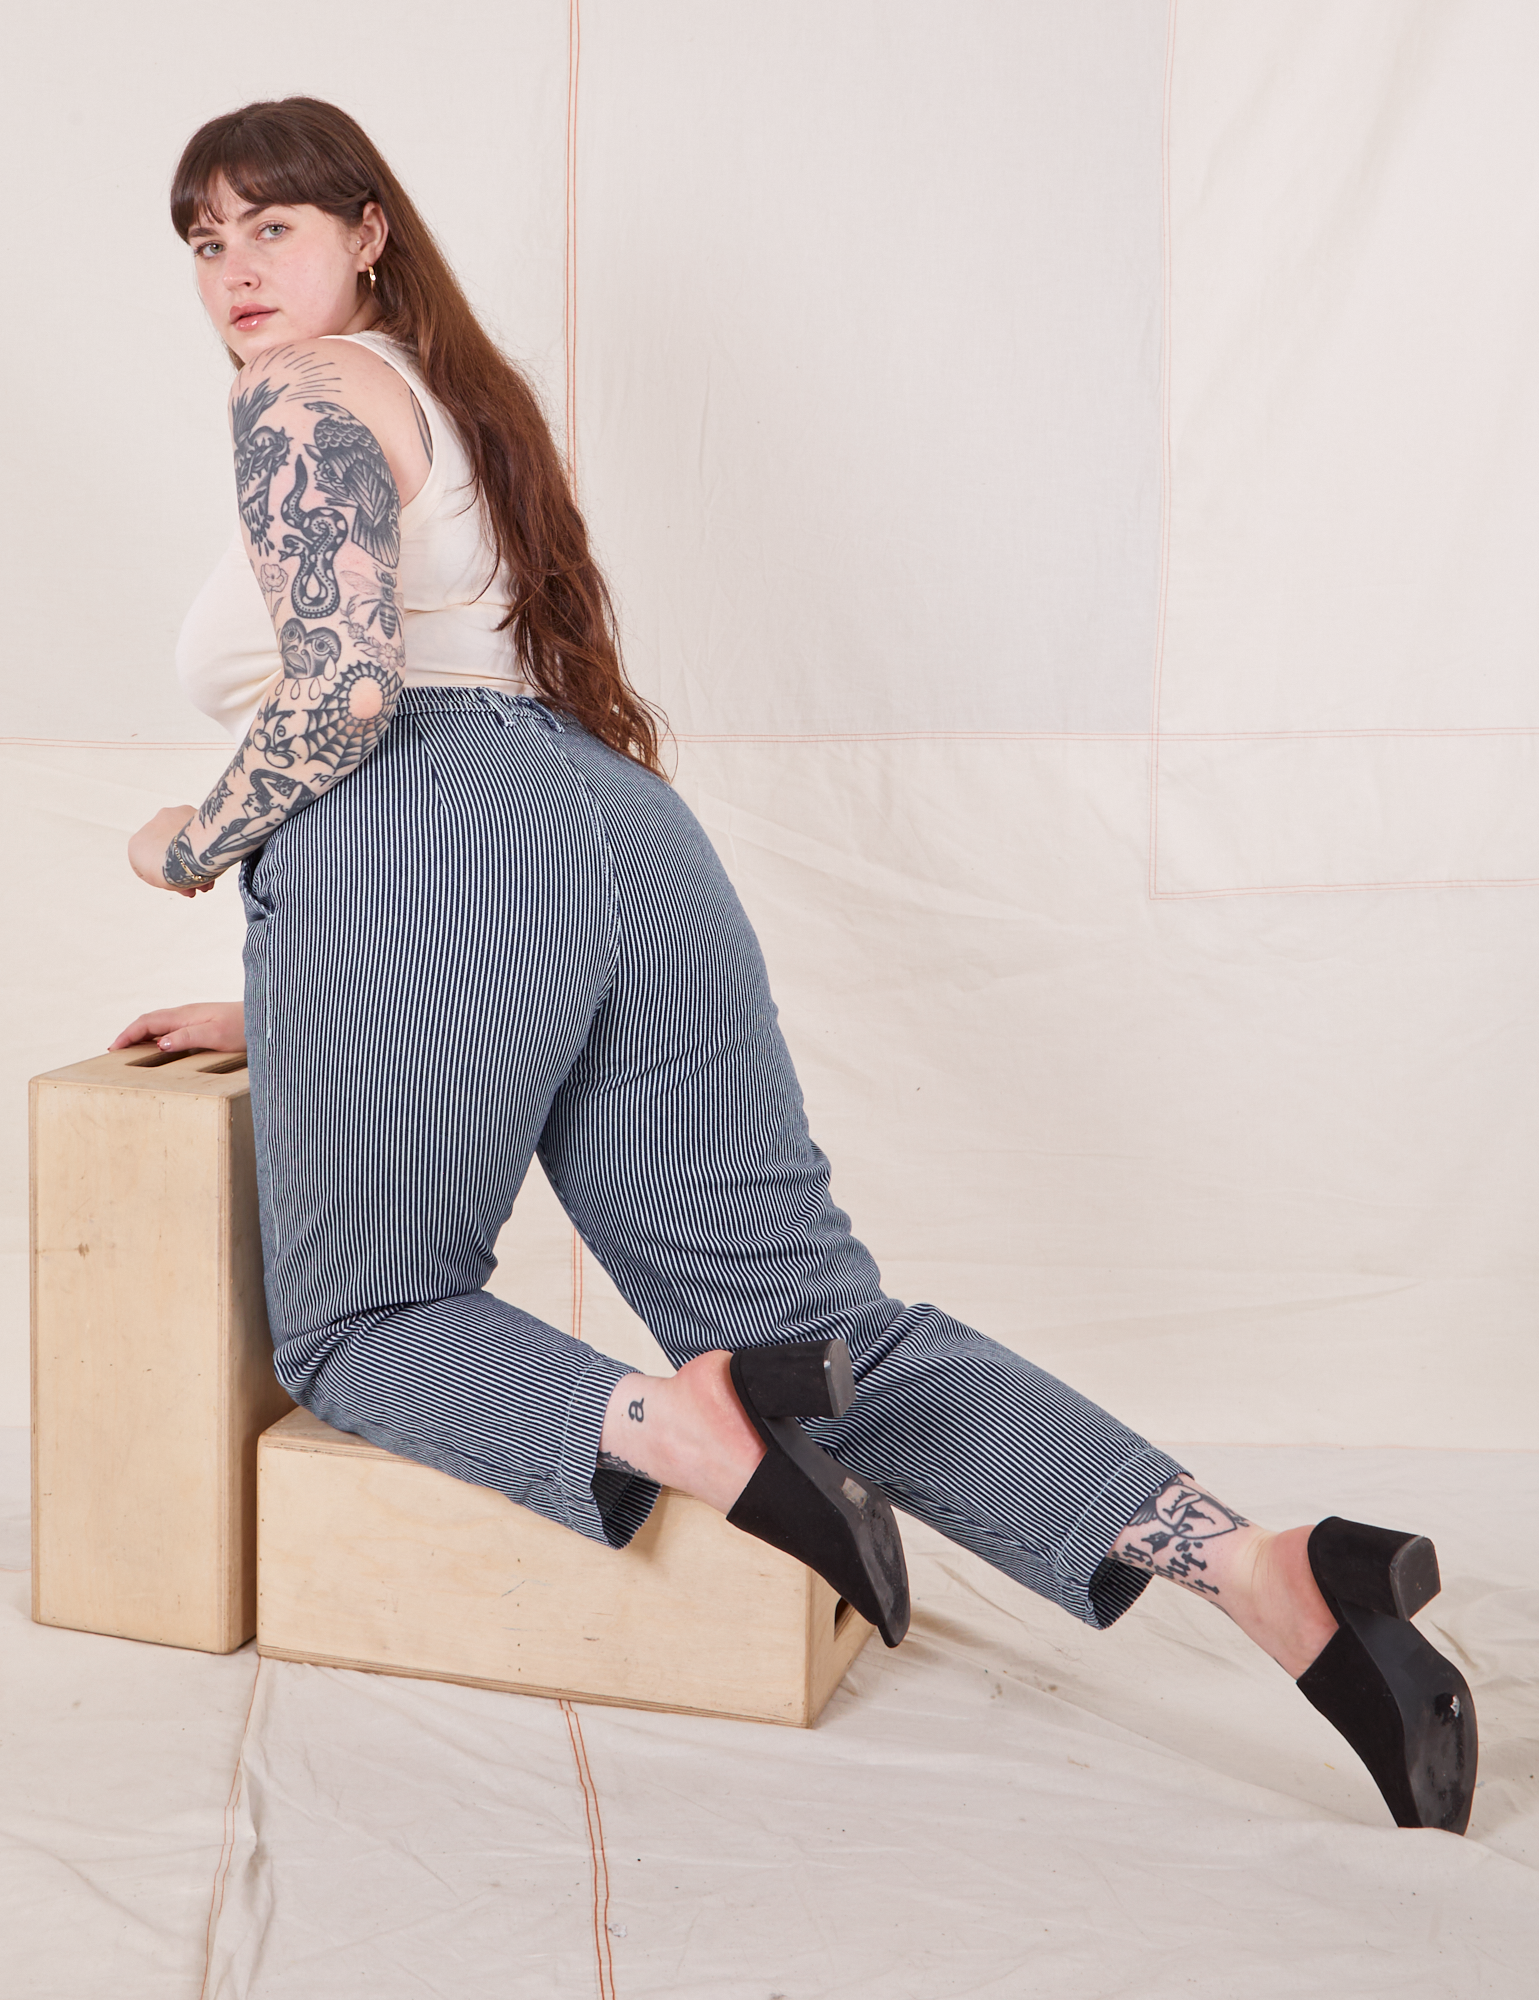 Sydney is kneeling on a wooden crate wearing Denim Trouser Jeans in Railroad Stripe